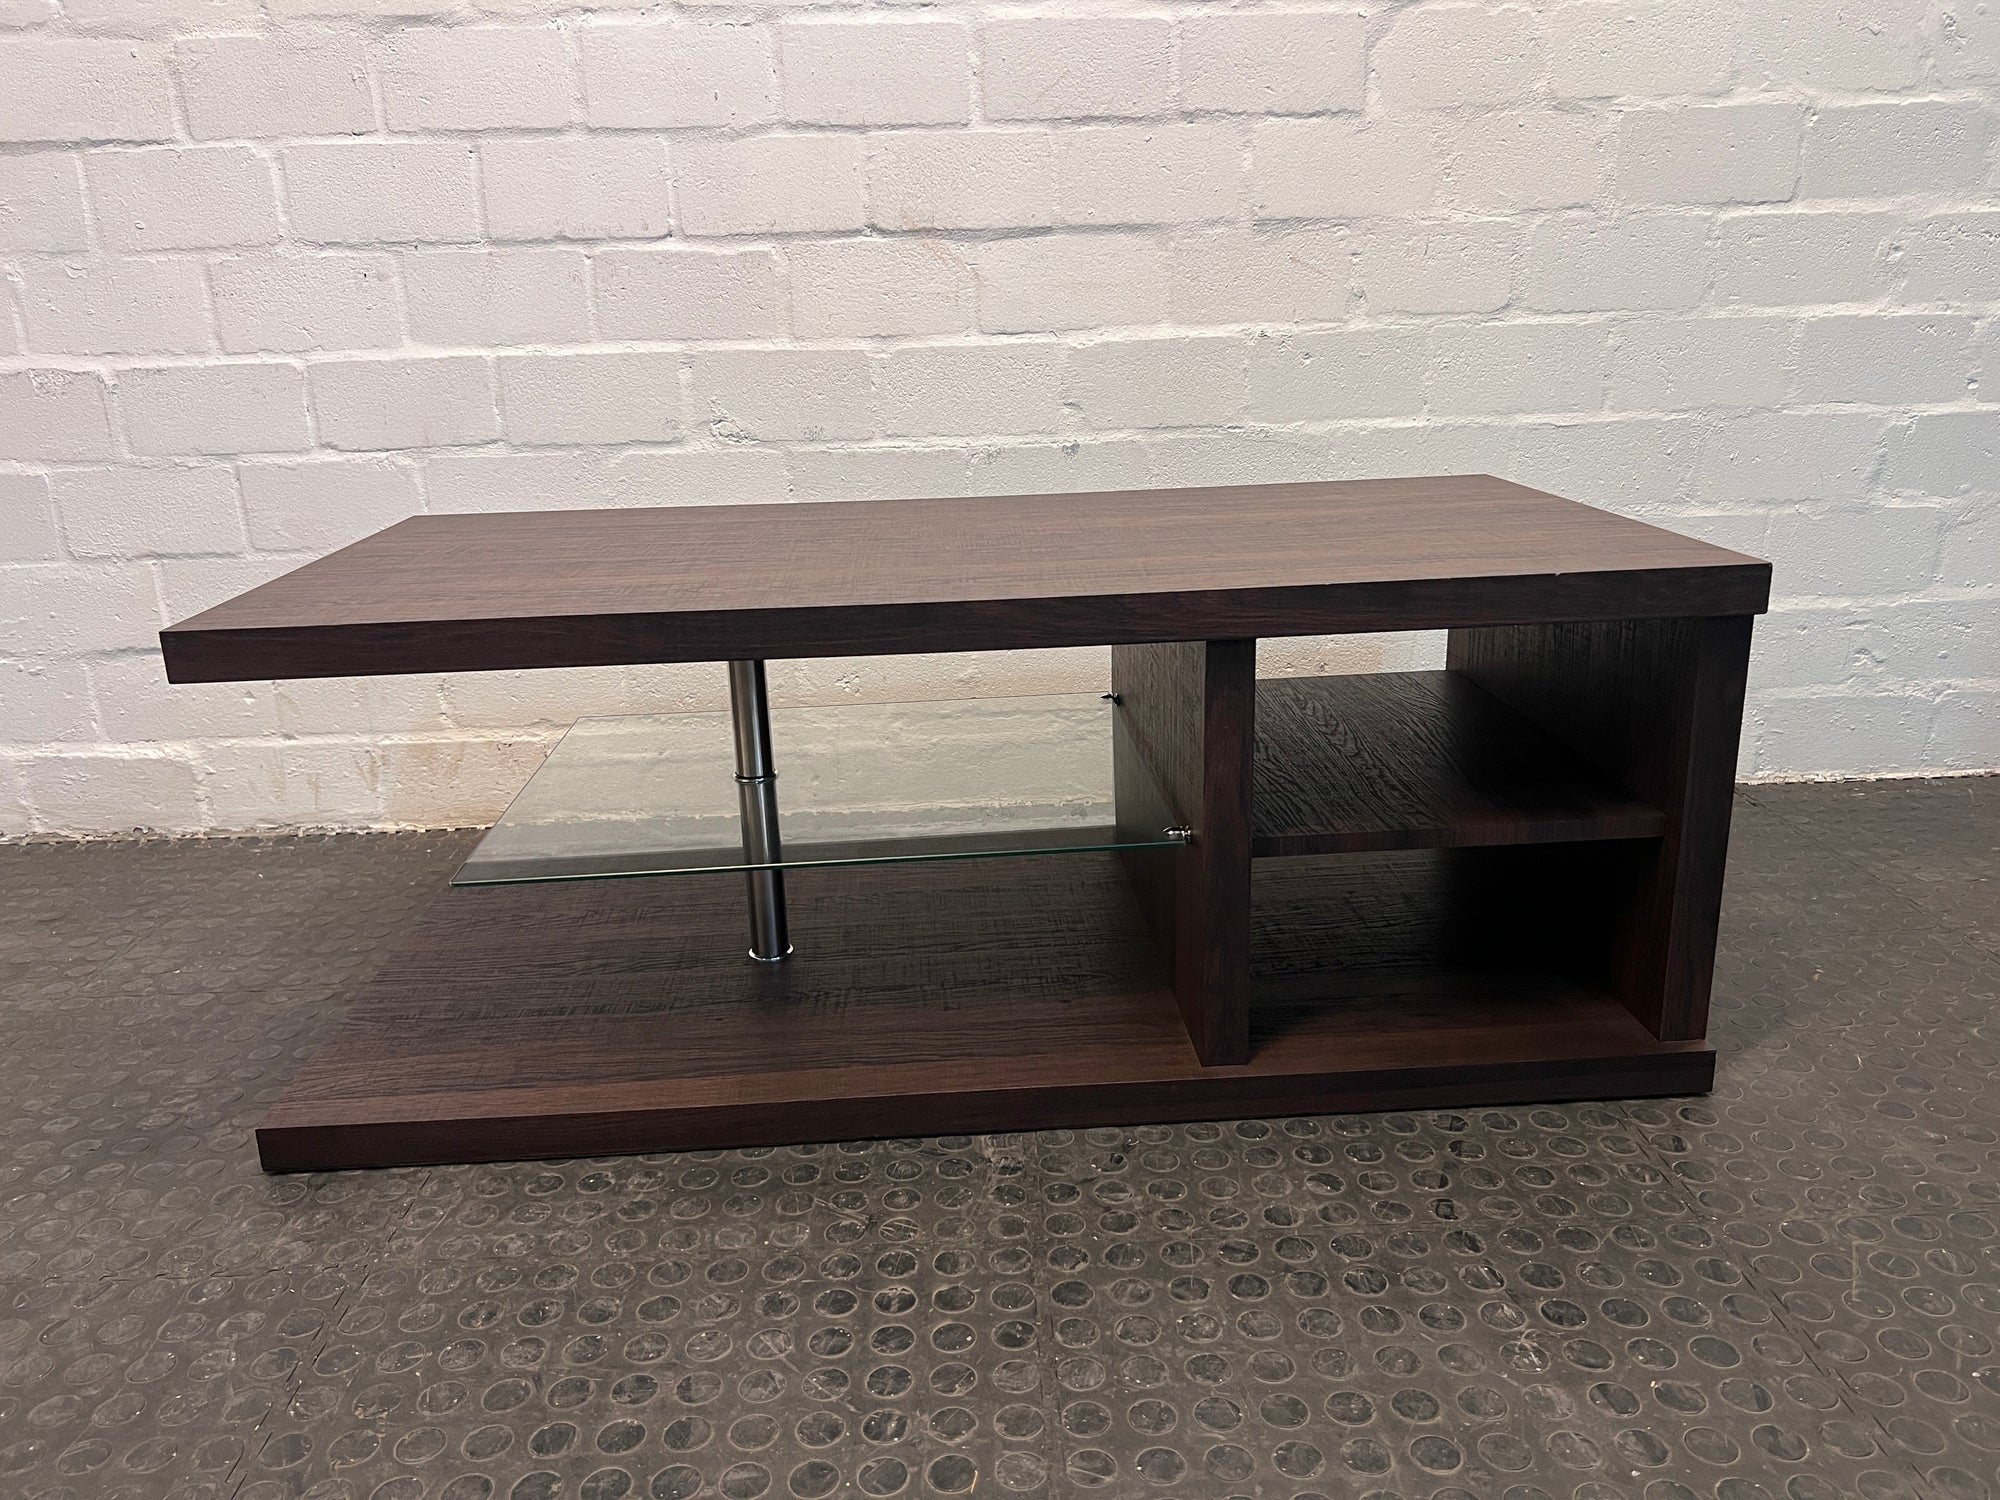 Darkwood Coffee Table with Glass Shelf 120 x 60cm